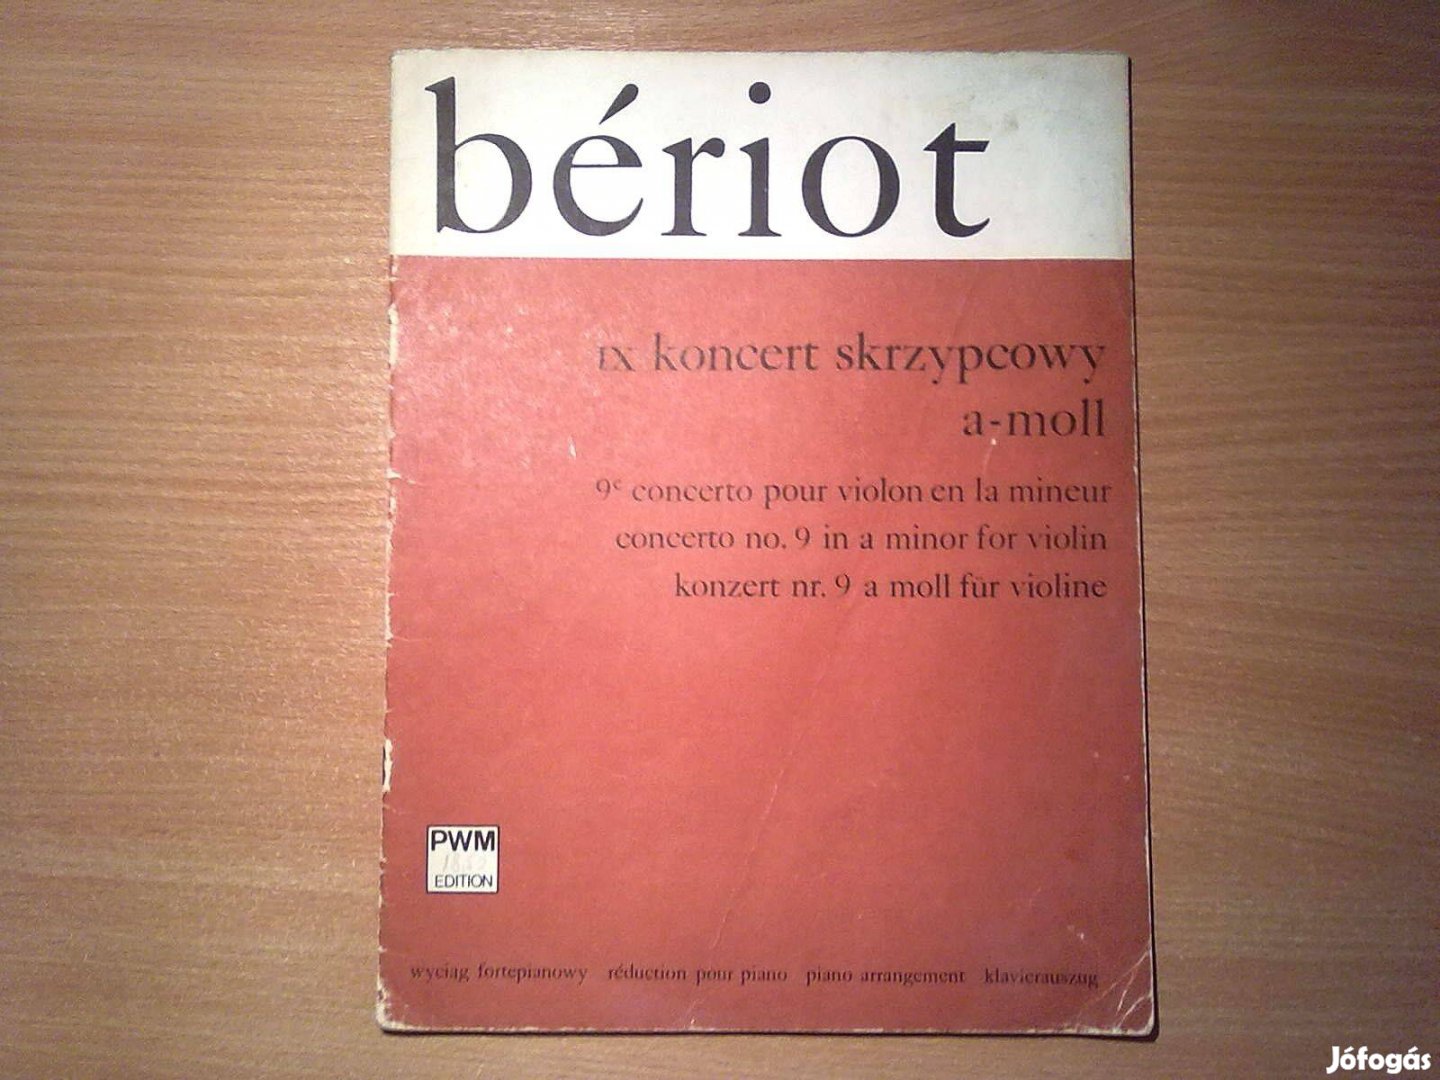 Bériot - Konzert Nr. 9 a Moll für Violine - Klavierauszug